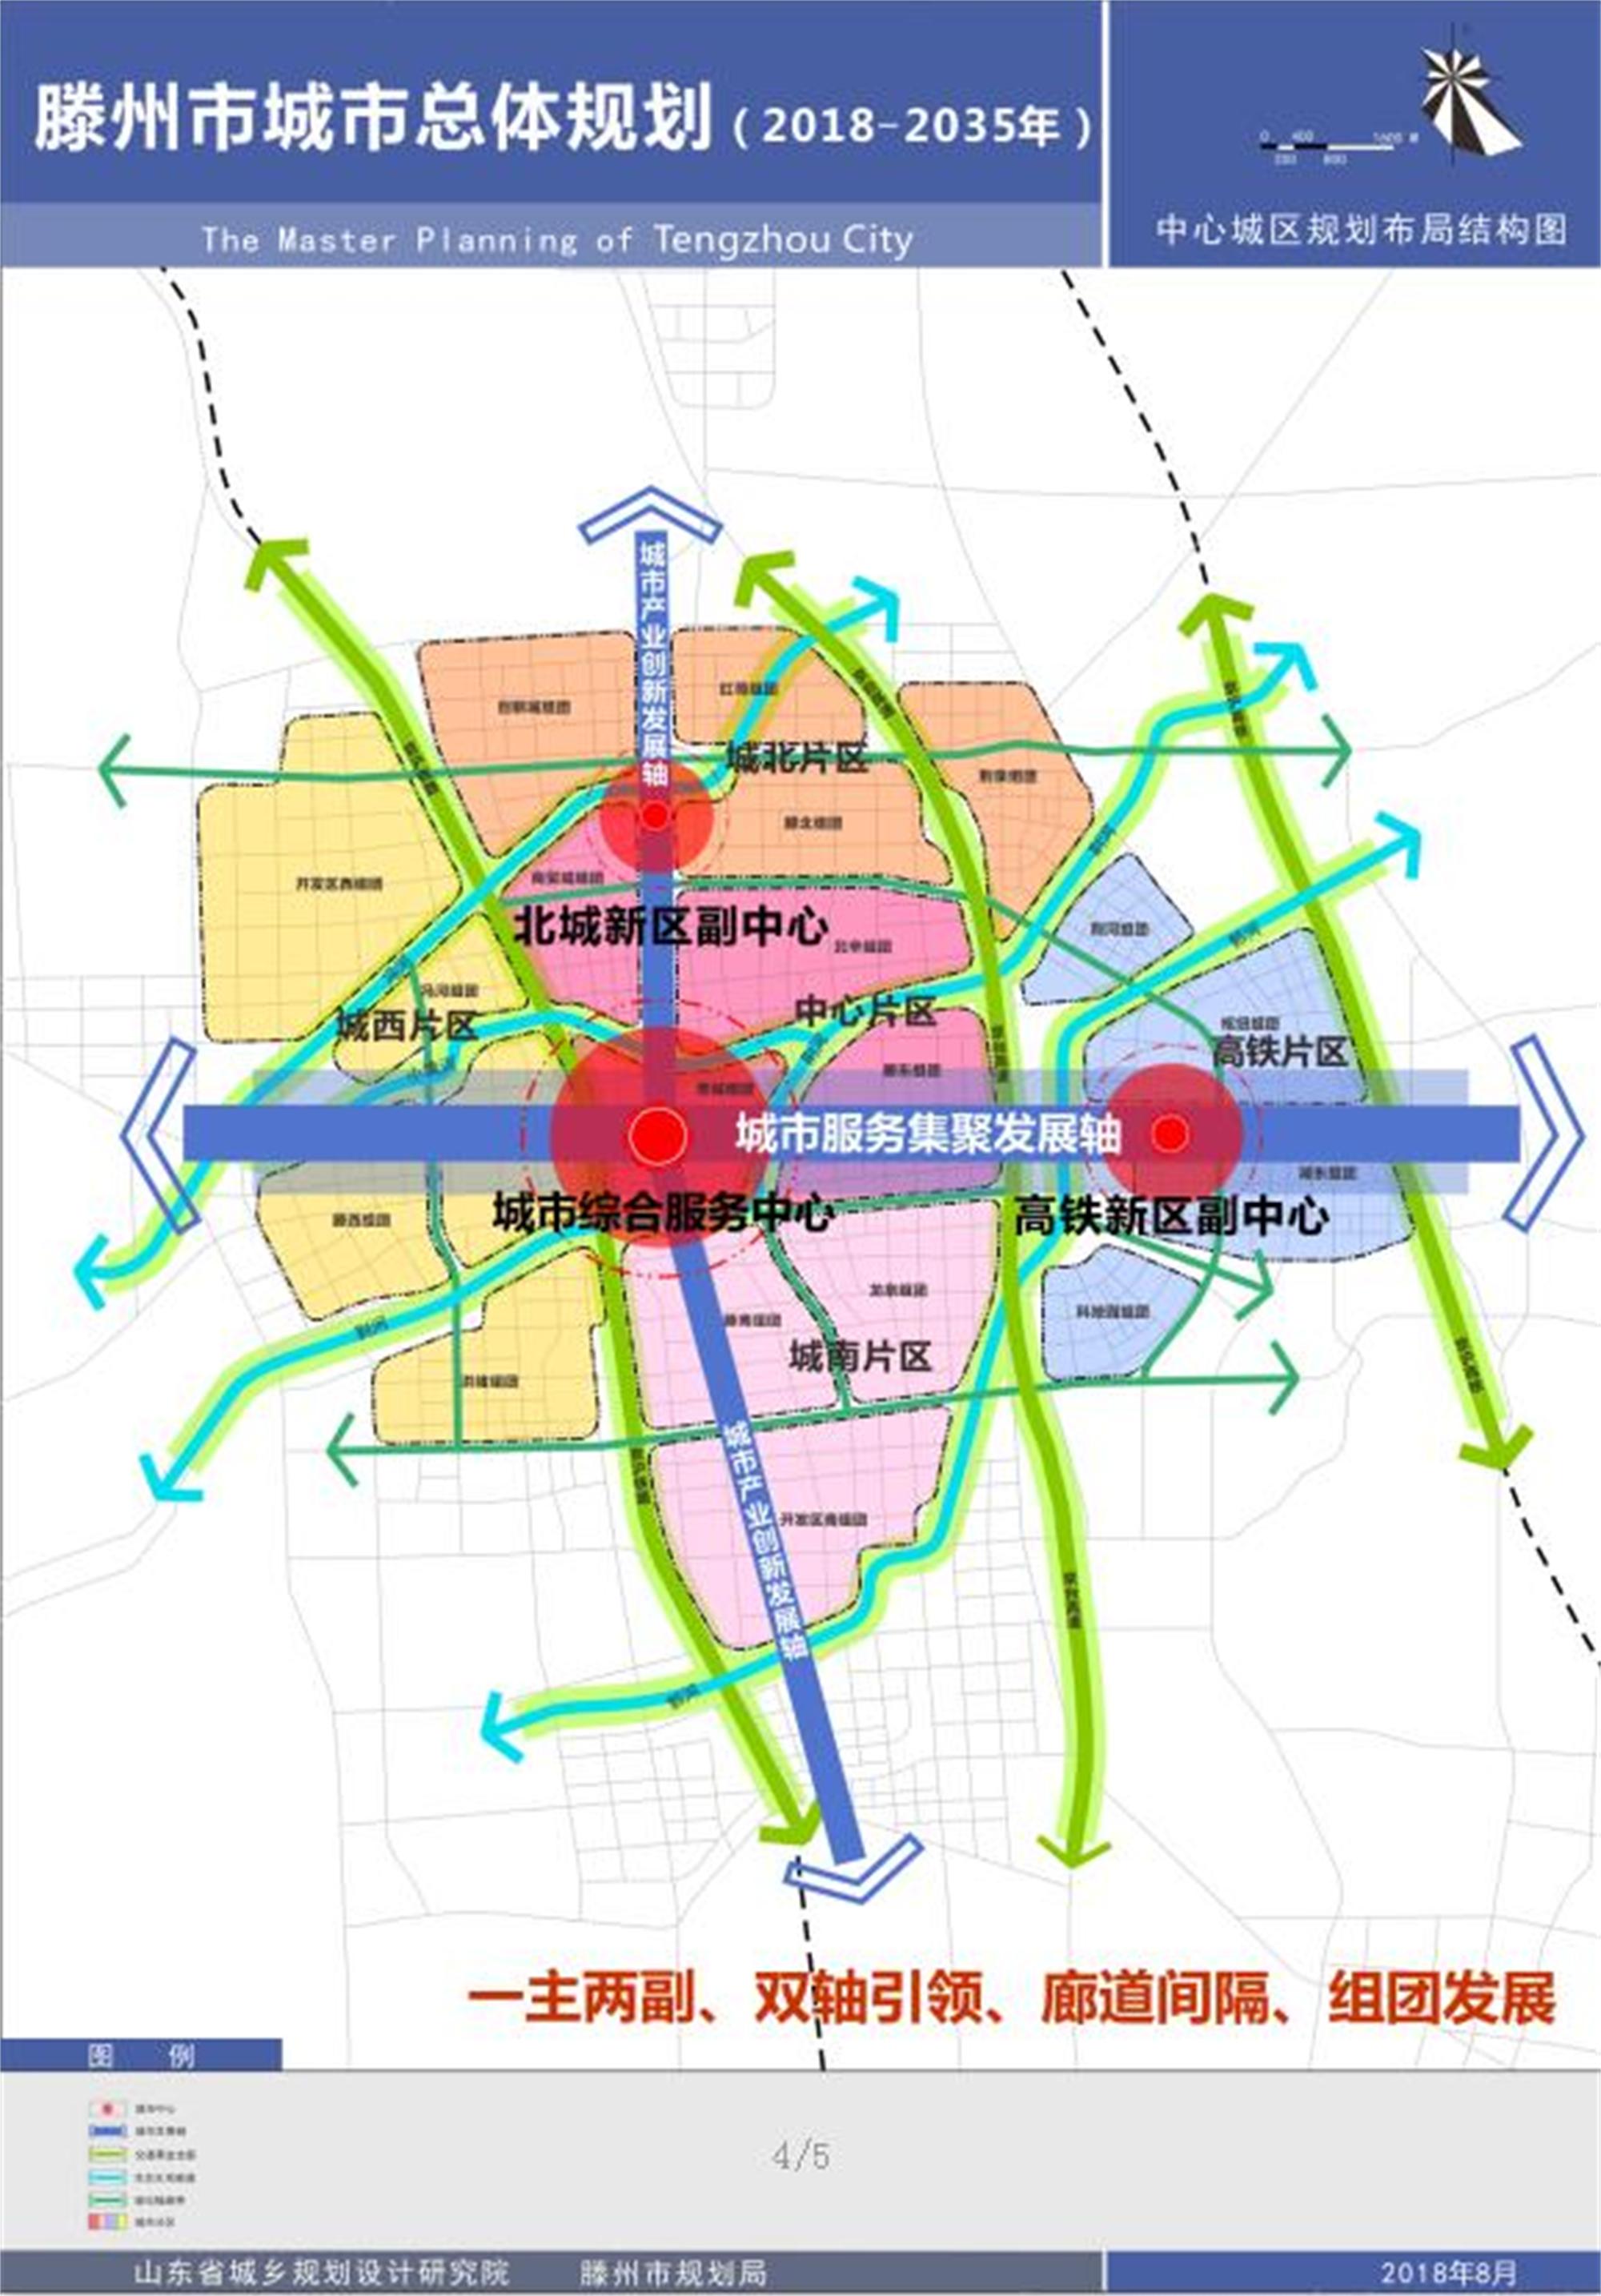 《滕州市城市总体规划(2018-2035年(草案)公示